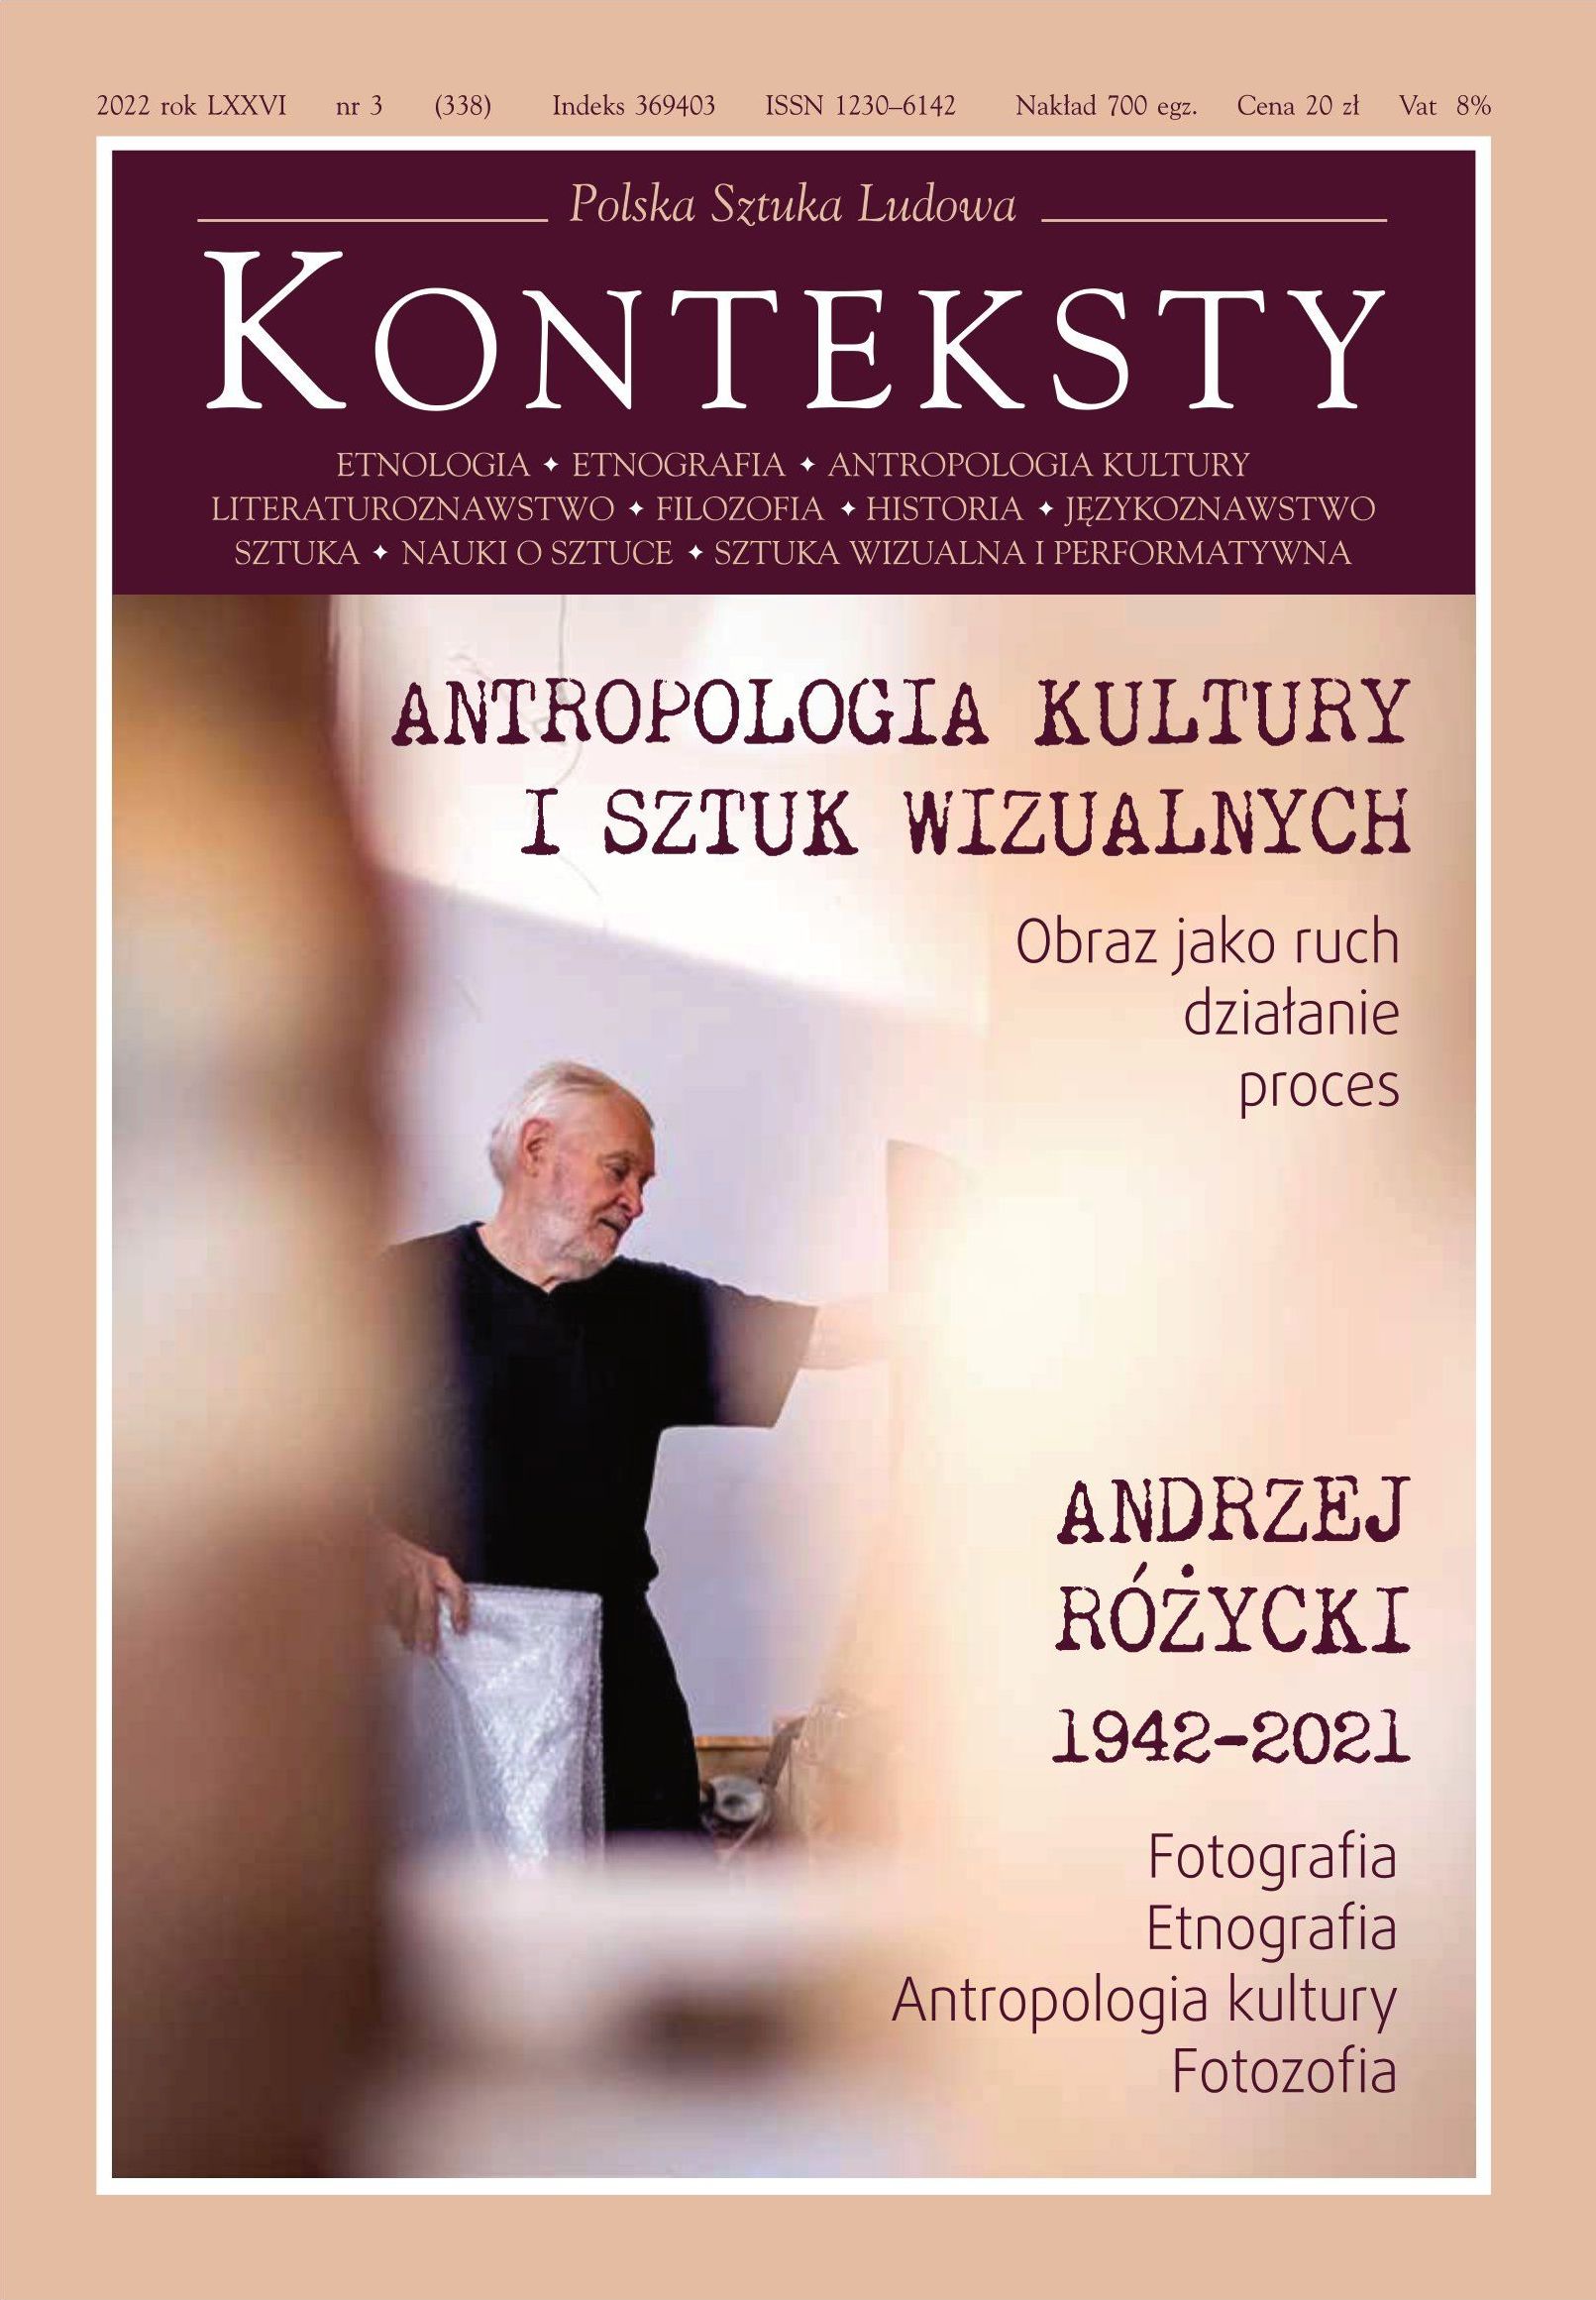 Andrzej Różycki. Photographer and Photosopher Cover Image